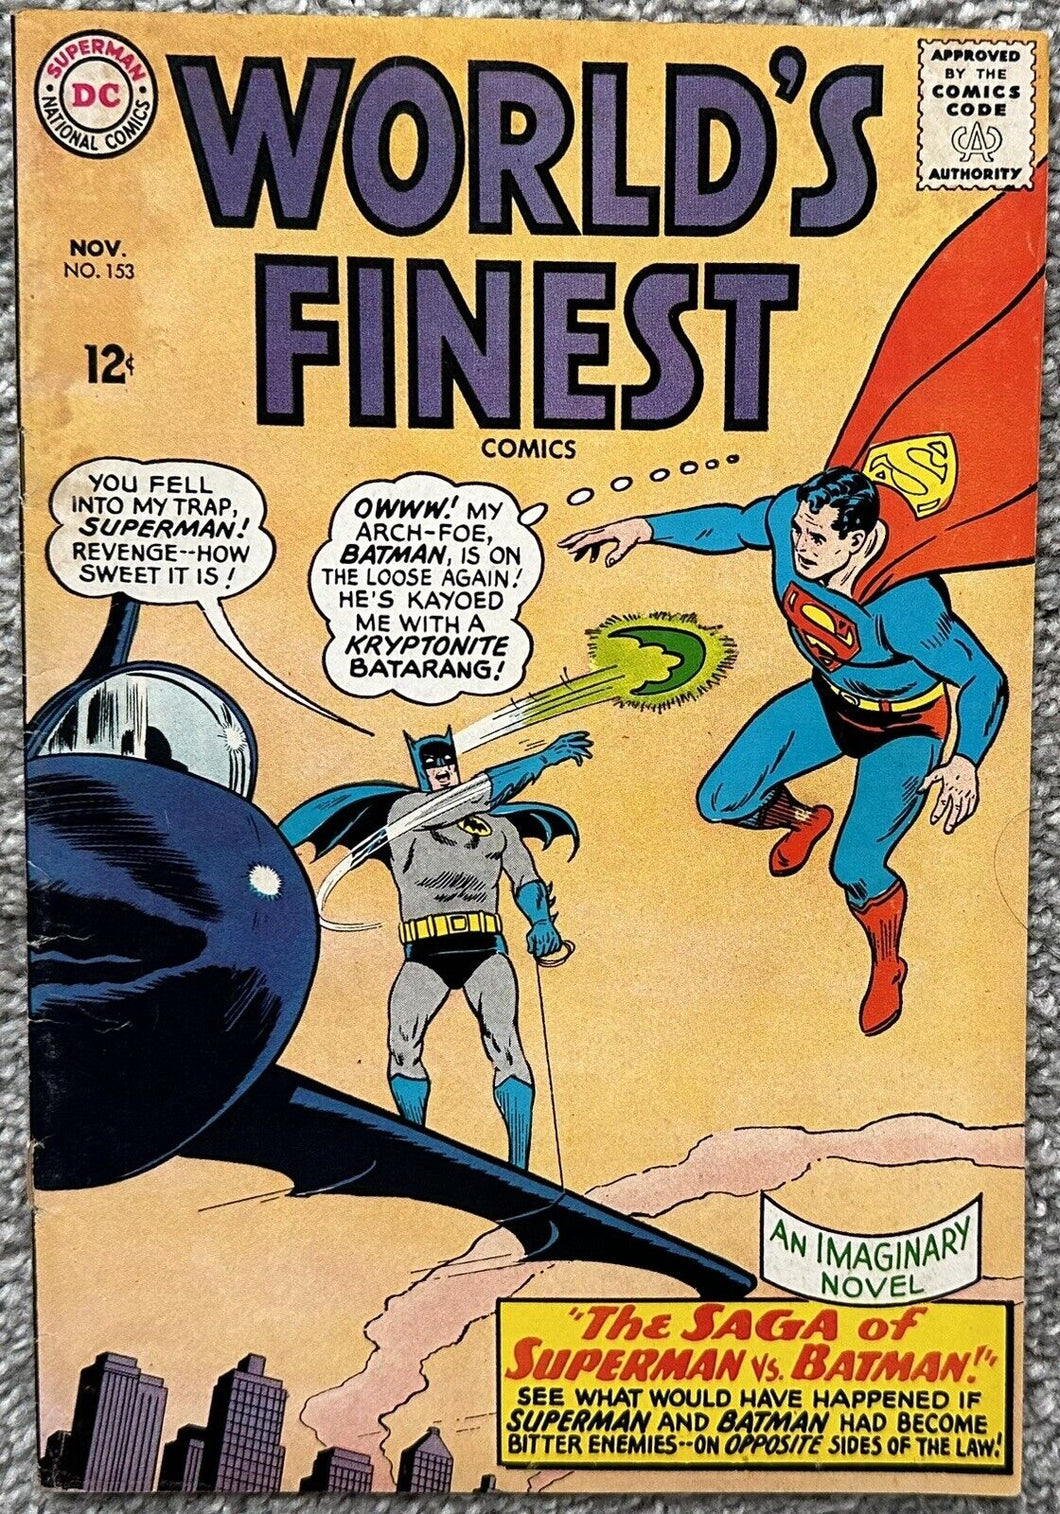 WORLD'S FINEST #153 (DC,1965) FAMOUS MEME BATMAN SLAPS ROBIN